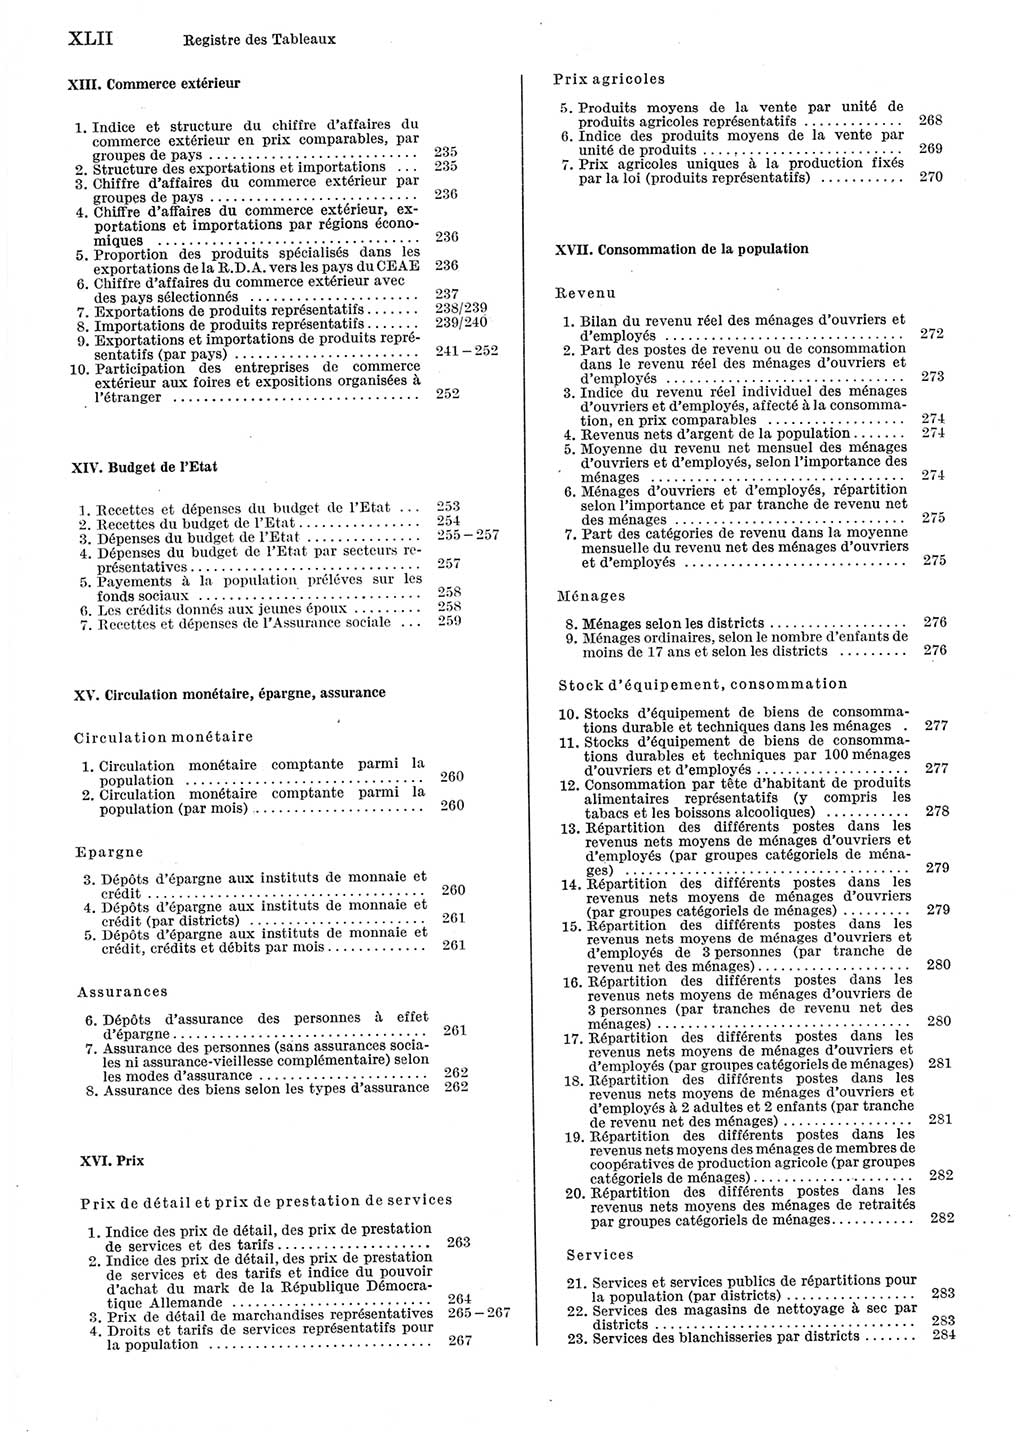 Statistisches Jahrbuch der Deutschen Demokratischen Republik (DDR) 1983, Seite 42 (Stat. Jb. DDR 1983, S. 42)